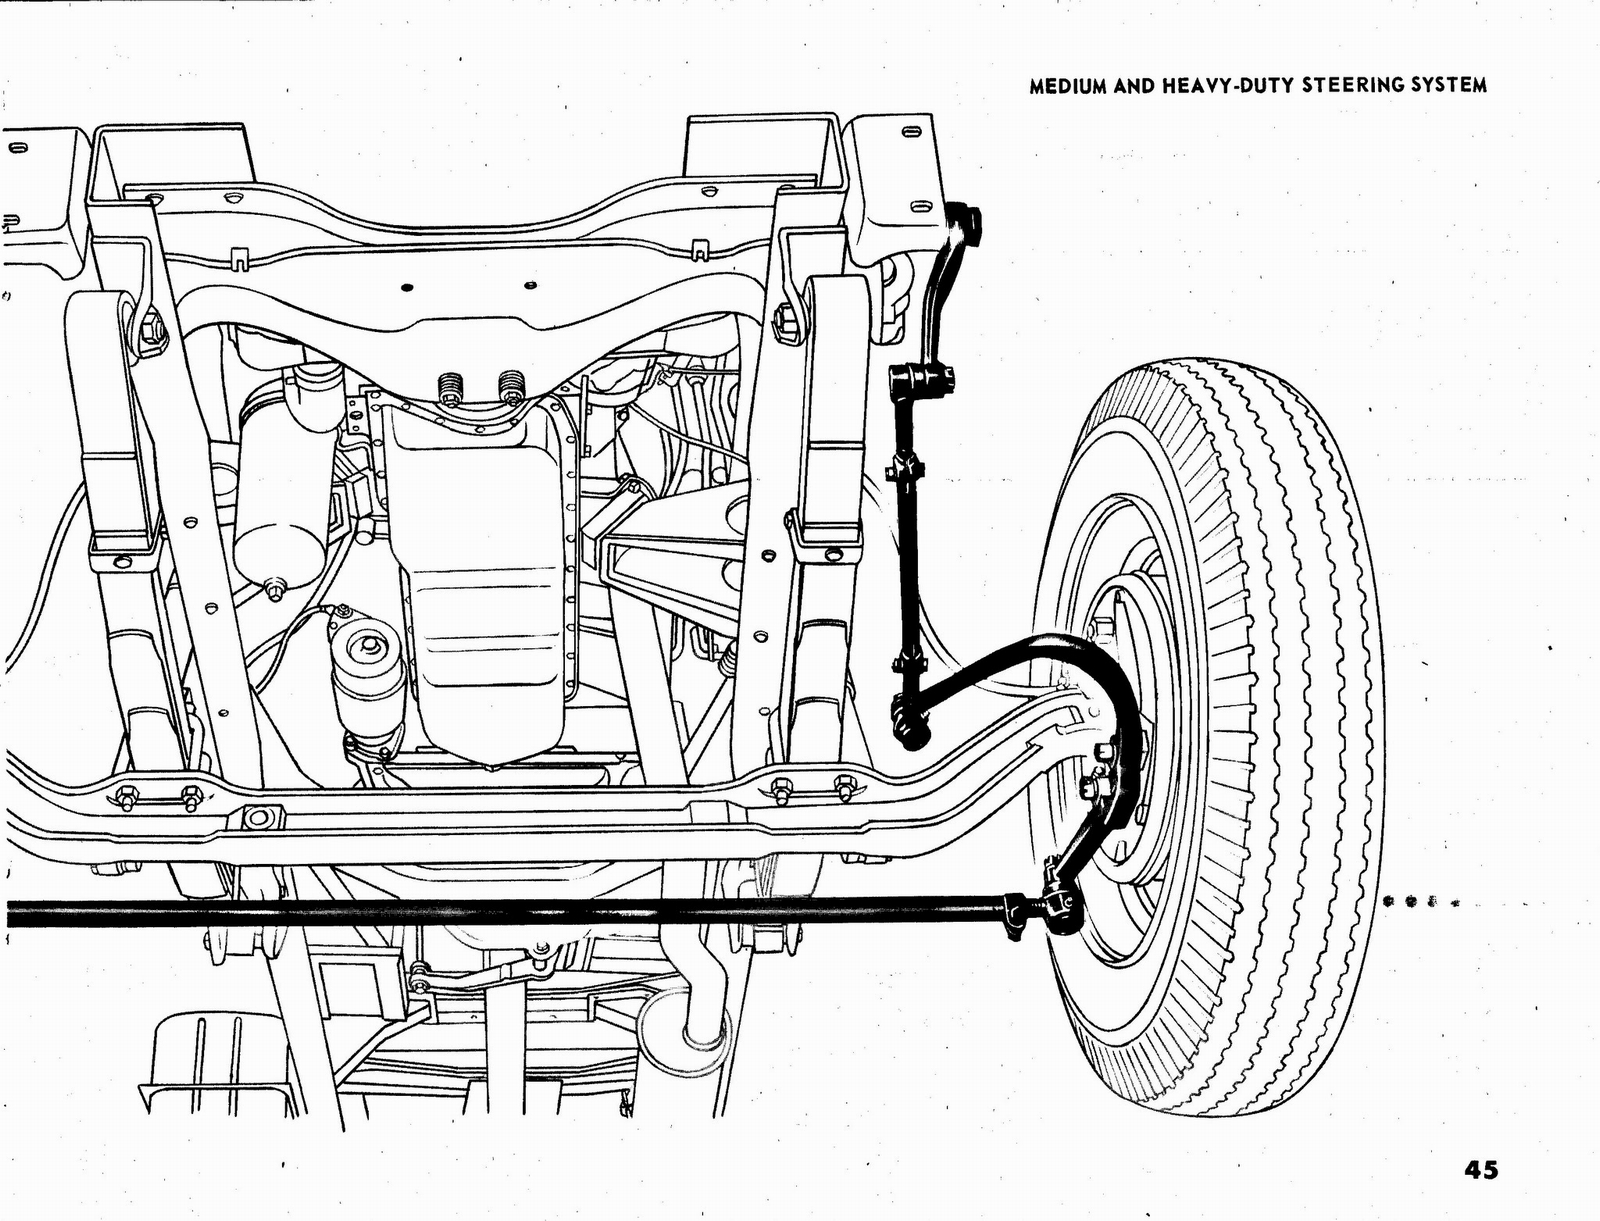 n_1963 Chevrolet Truck Engineering Features-45.jpg